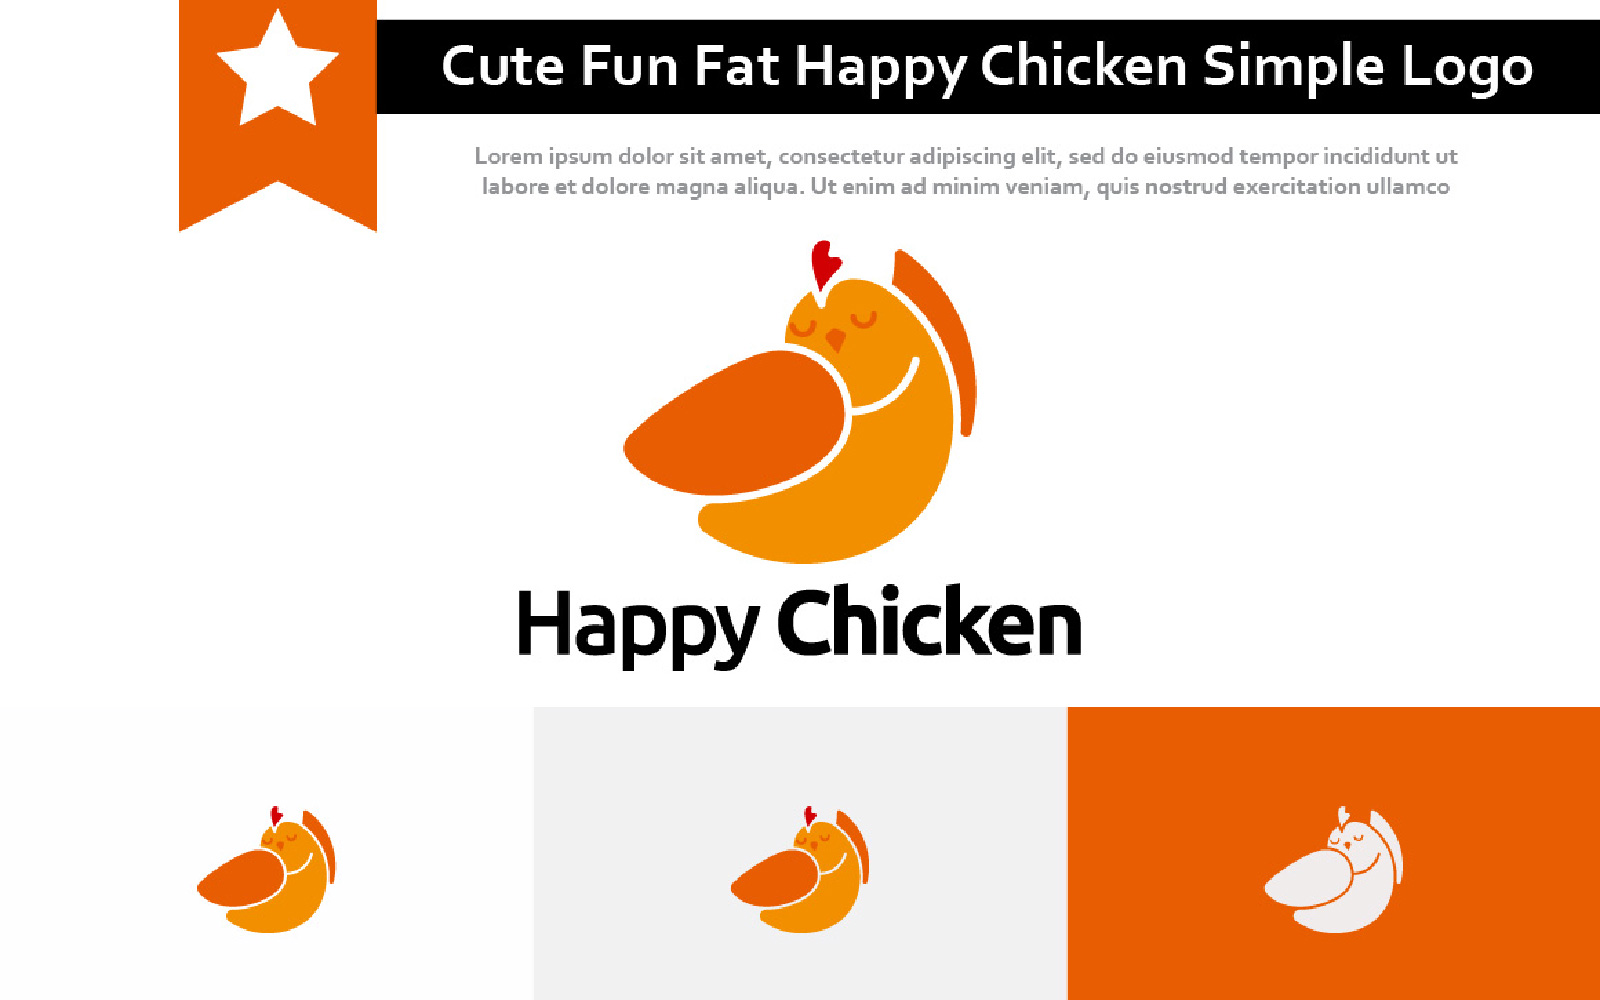 Cute Fun Fat Happy Chicken Simple Logo